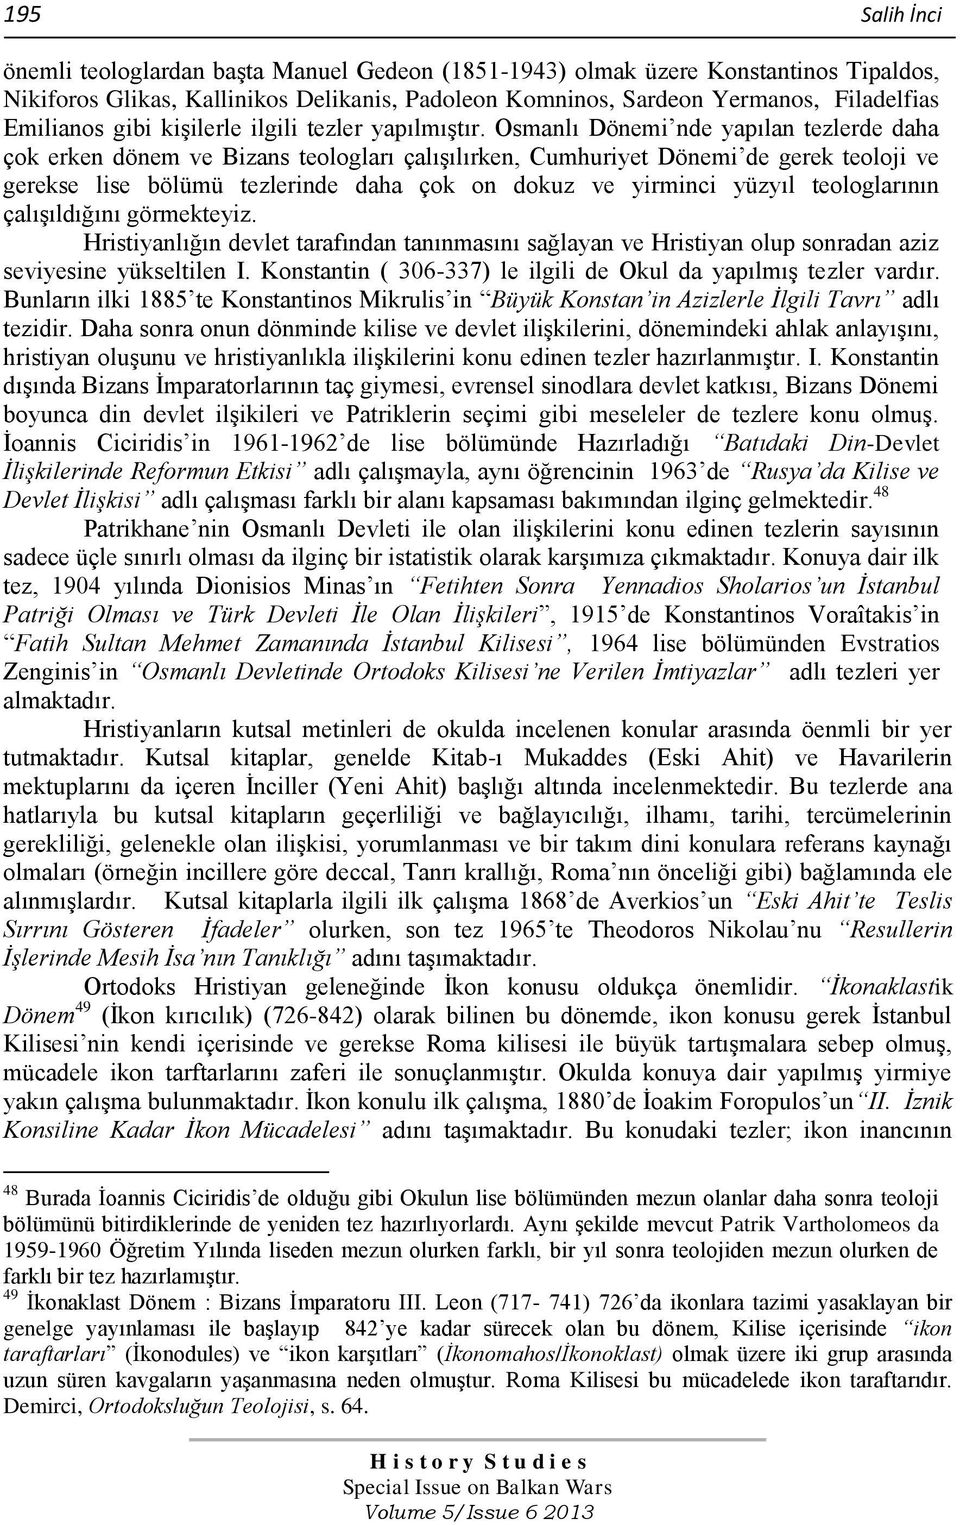 Osmanlı Dönemi nde yapılan tezlerde daha çok erken dönem ve Bizans teologları çalışılırken, Cumhuriyet Dönemi de gerek teoloji ve gerekse lise bölümü tezlerinde daha çok on dokuz ve yirminci yüzyıl